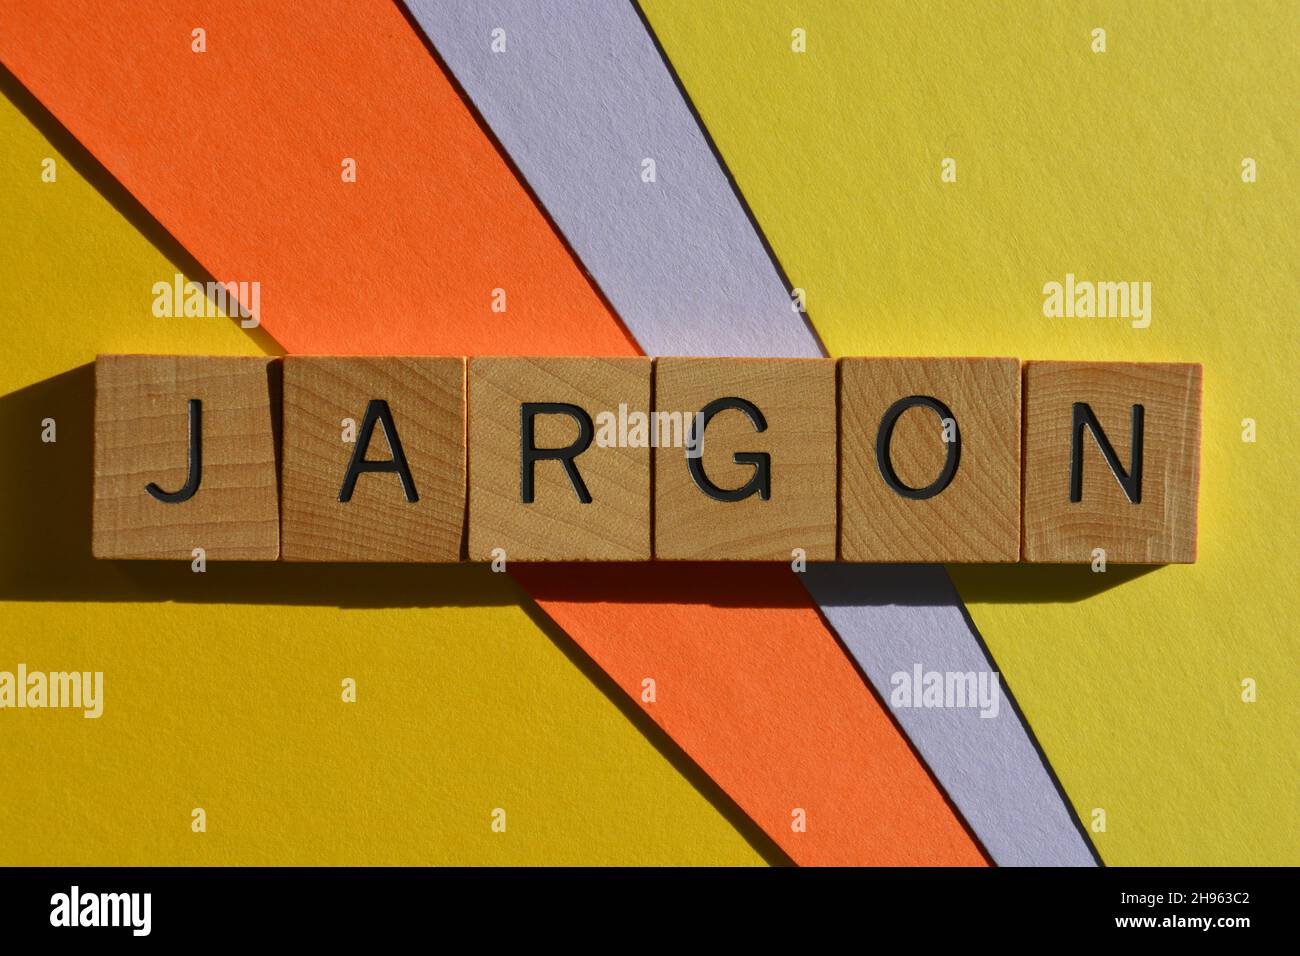 Jargon, Wort in Holzalphabetbuchstaben isoliert auf buntem Hintergrund Stockfoto